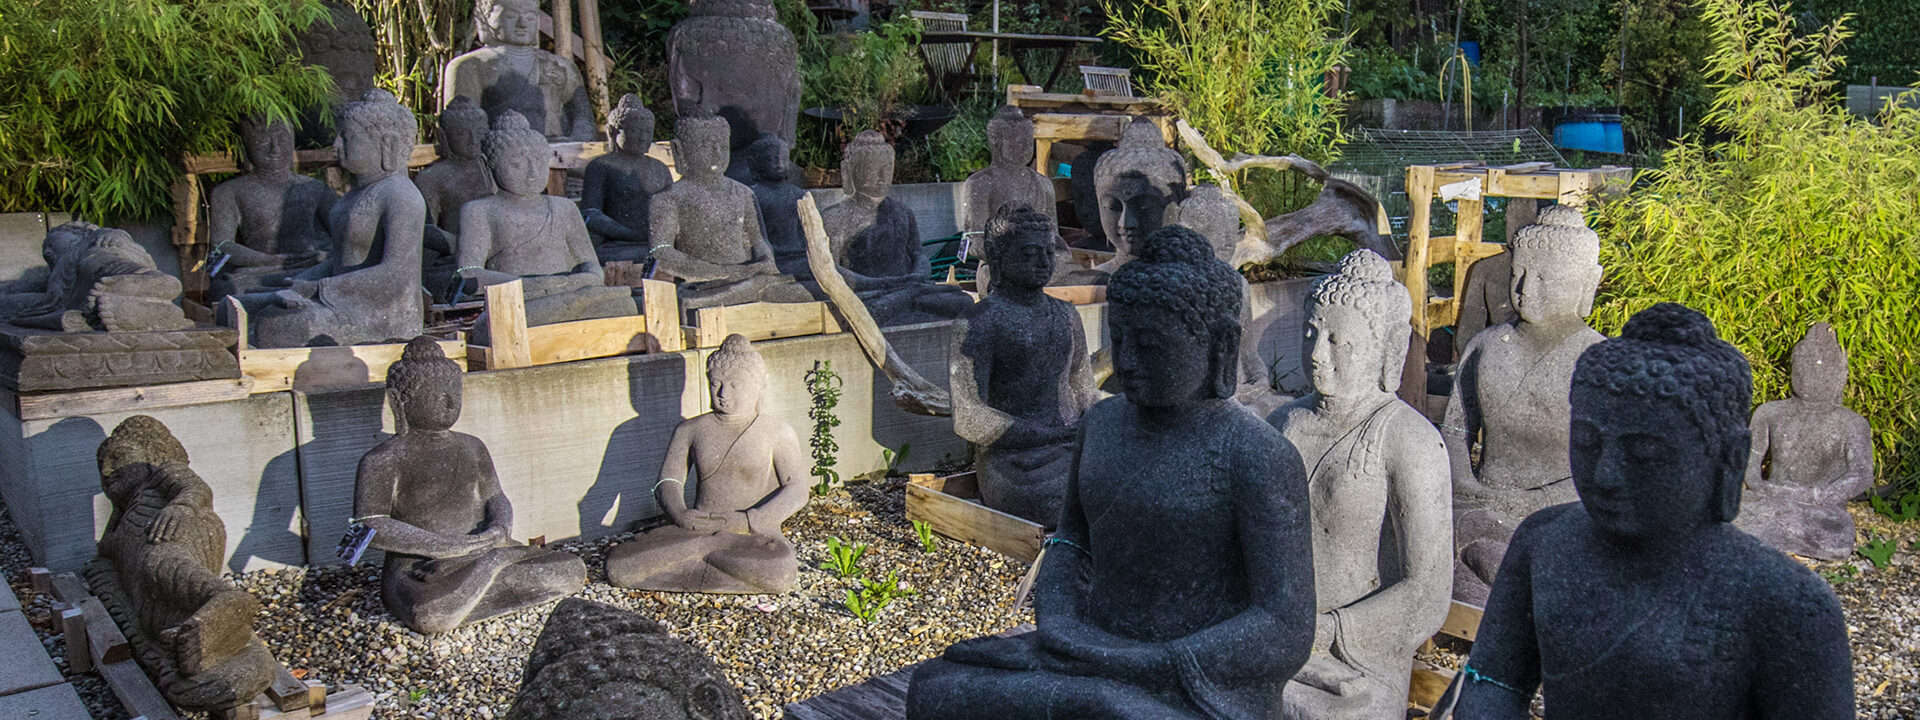 Sliderbild: Buddhas aus Vulkangestein